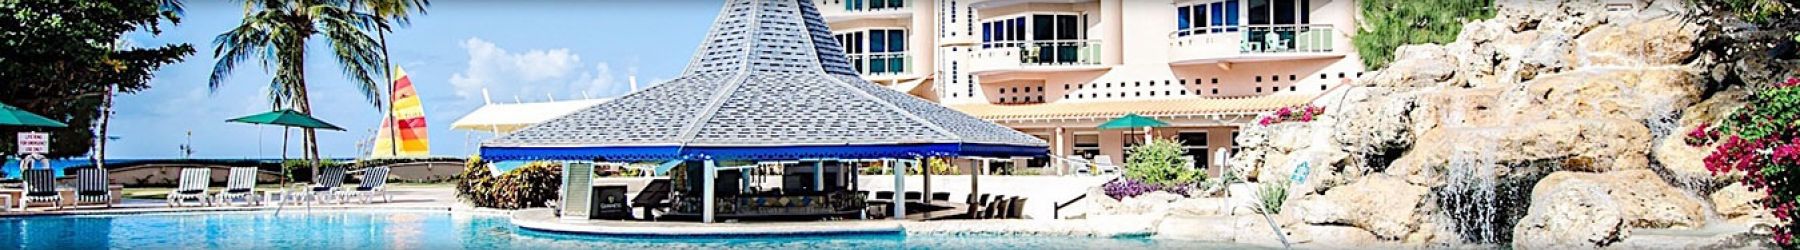 Accra Beach Hotel & Spa Barbados - 4*